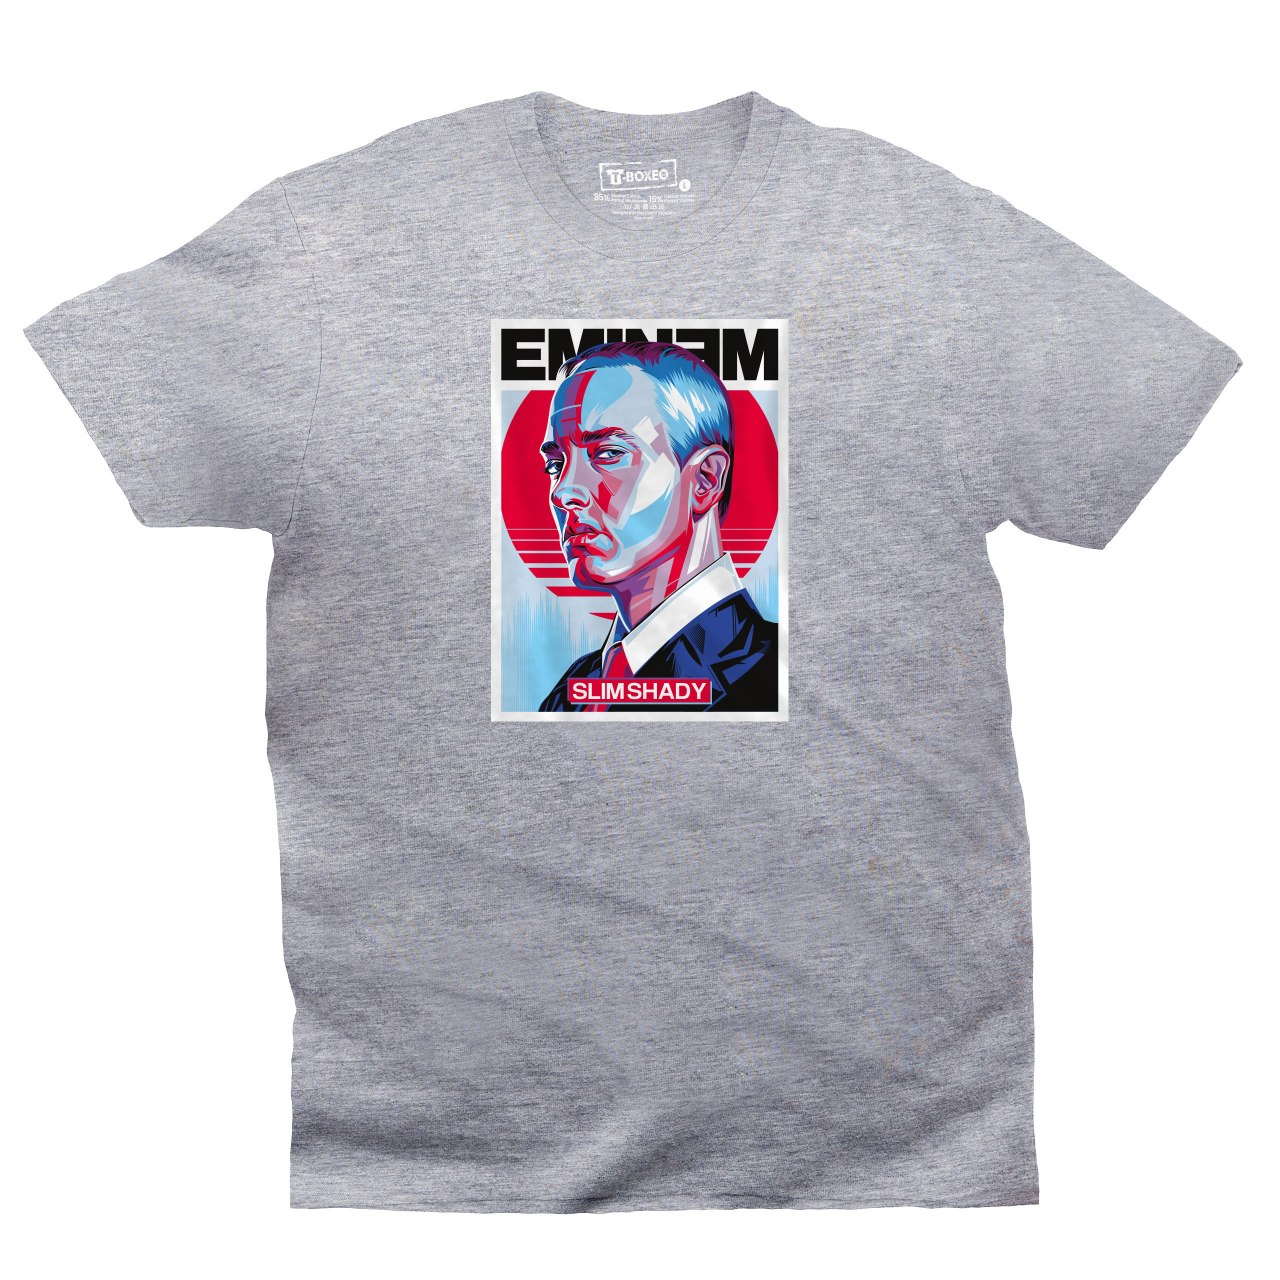 Pánské tričko s potiskem “Eminem”